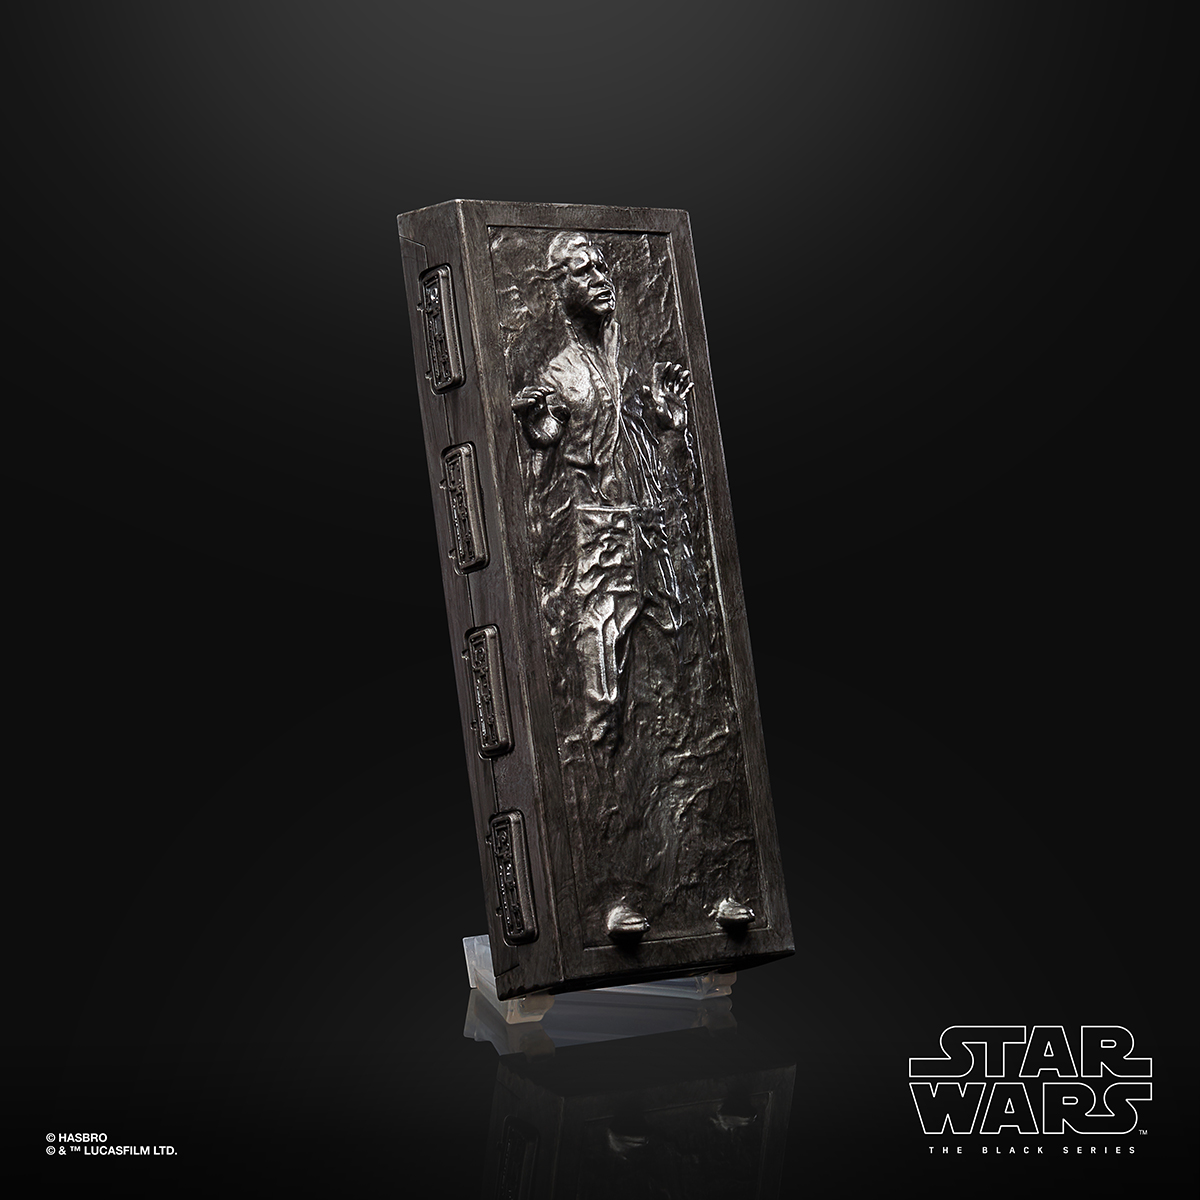 Star Wars The Black Series 6 Inch Han Solo Carbonite Figure Oop 3